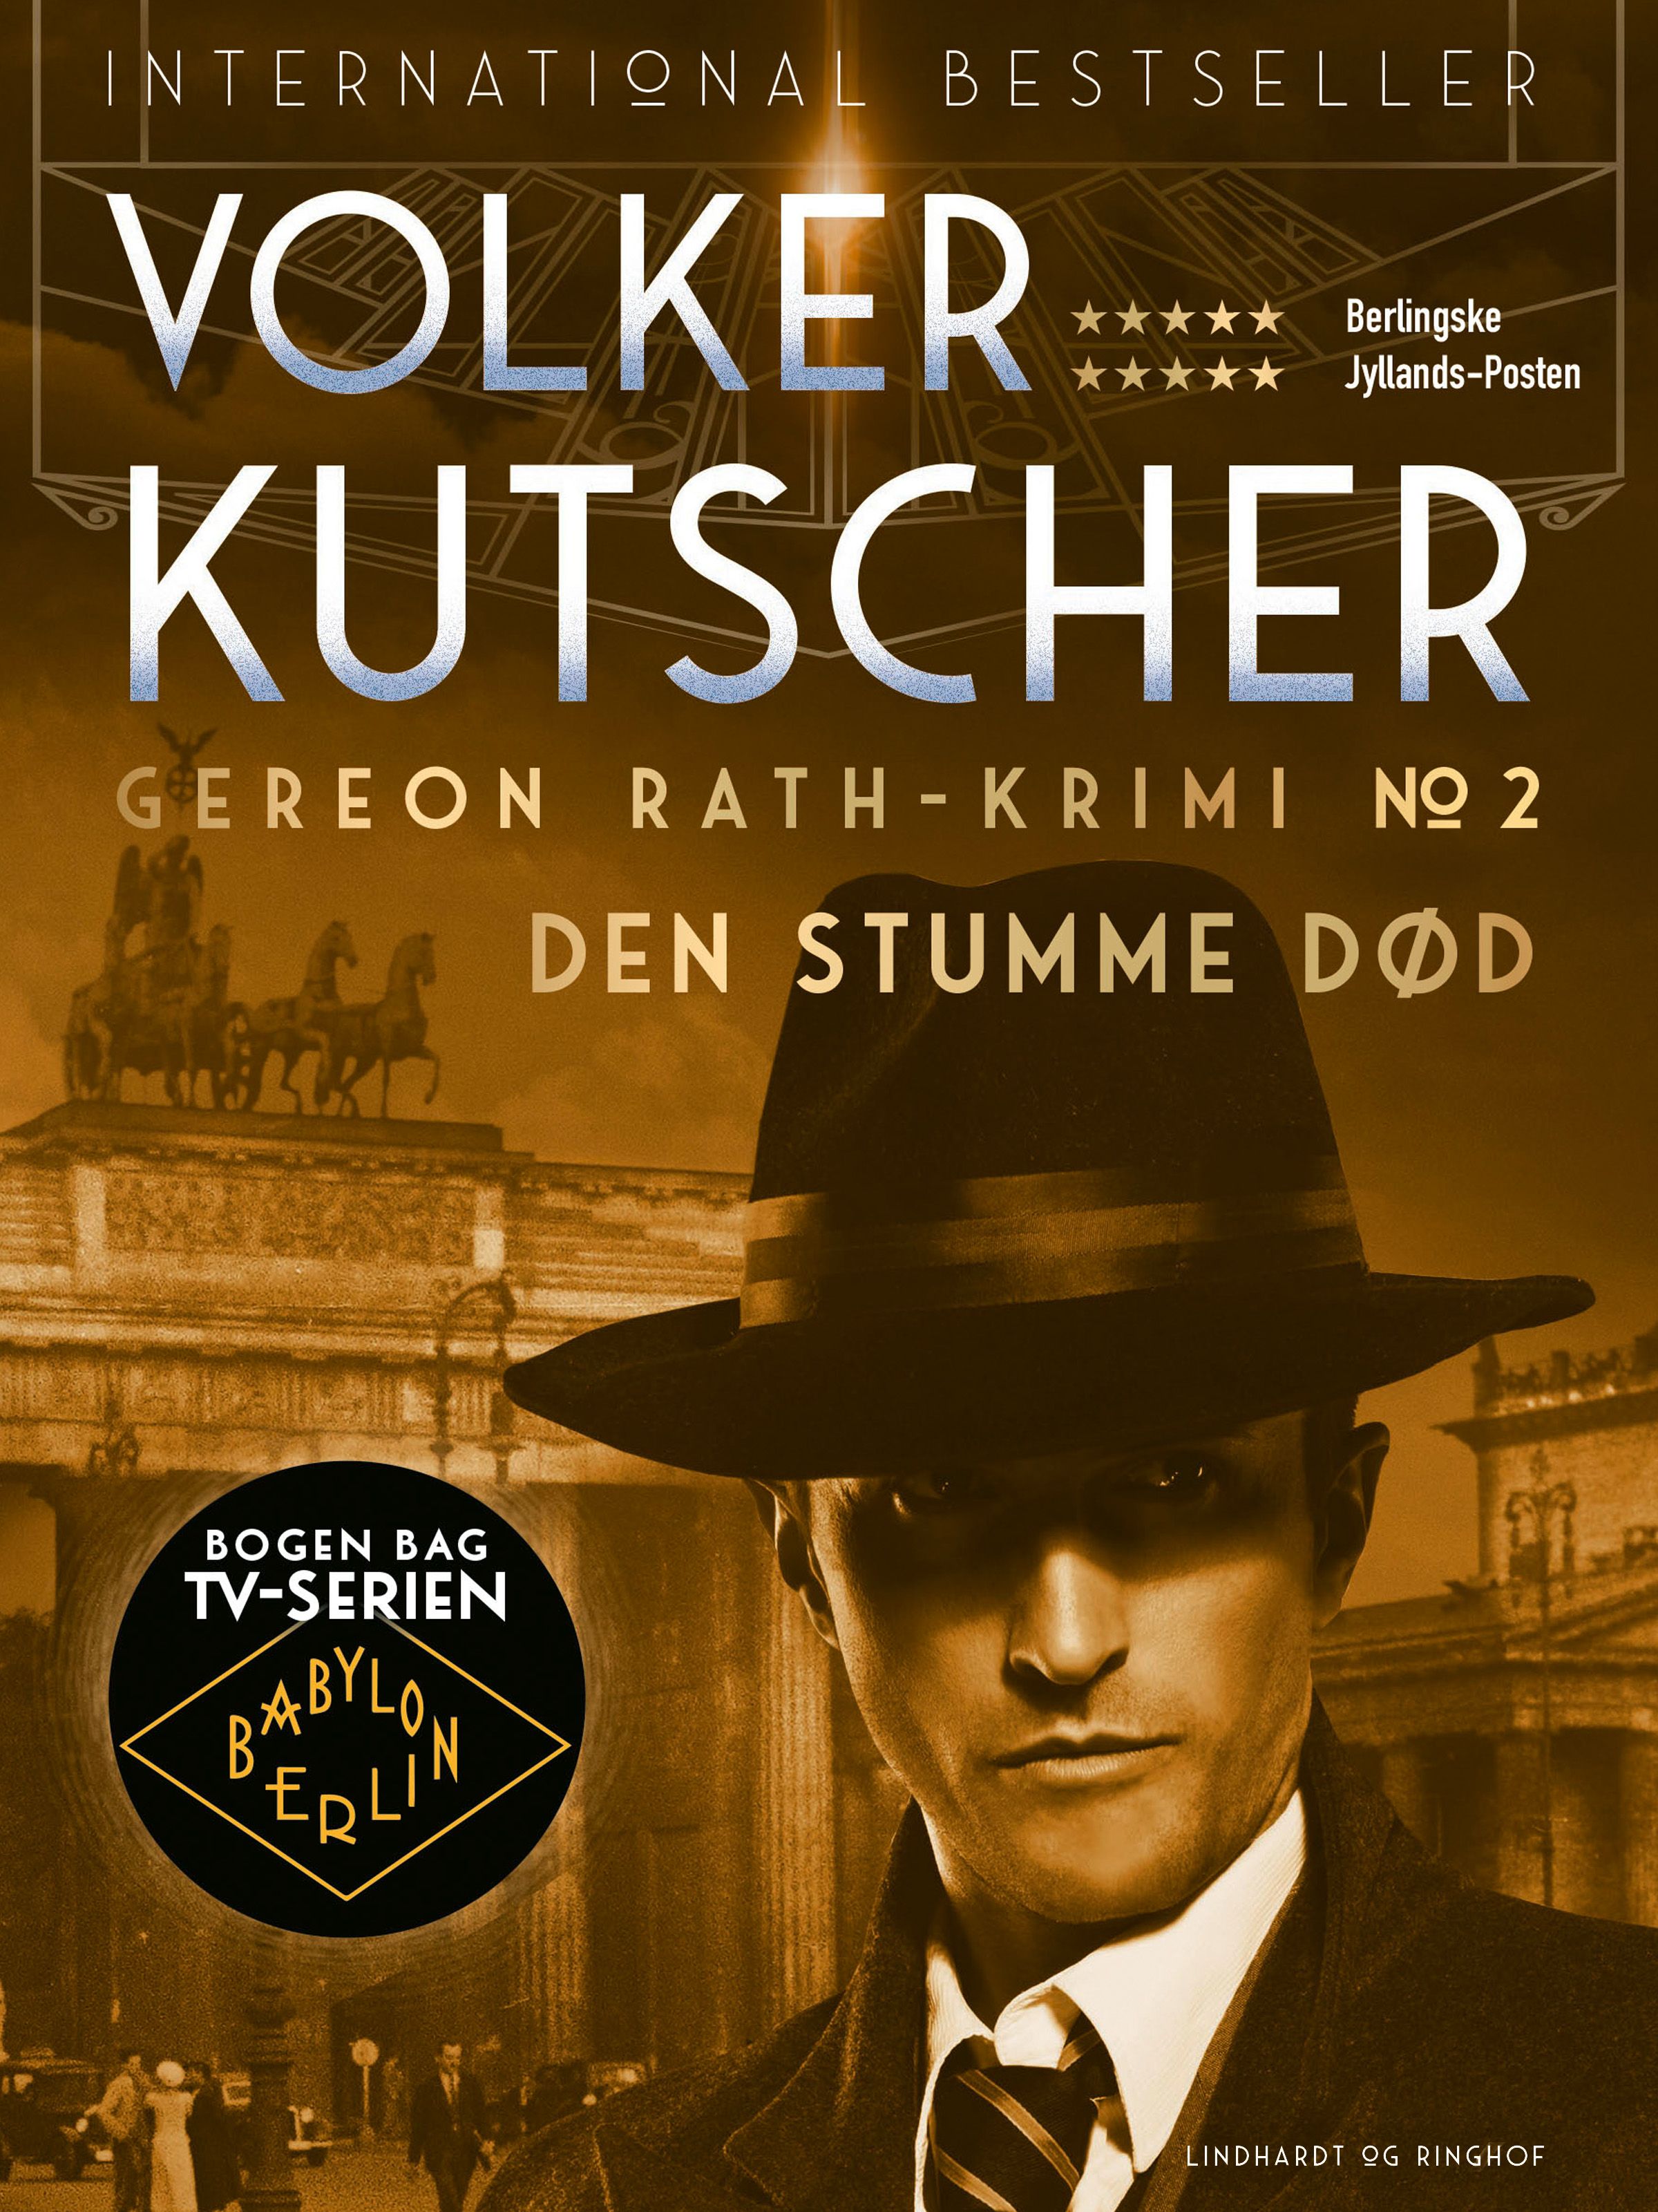 Den stumme død, eBook by Volker Kutscher